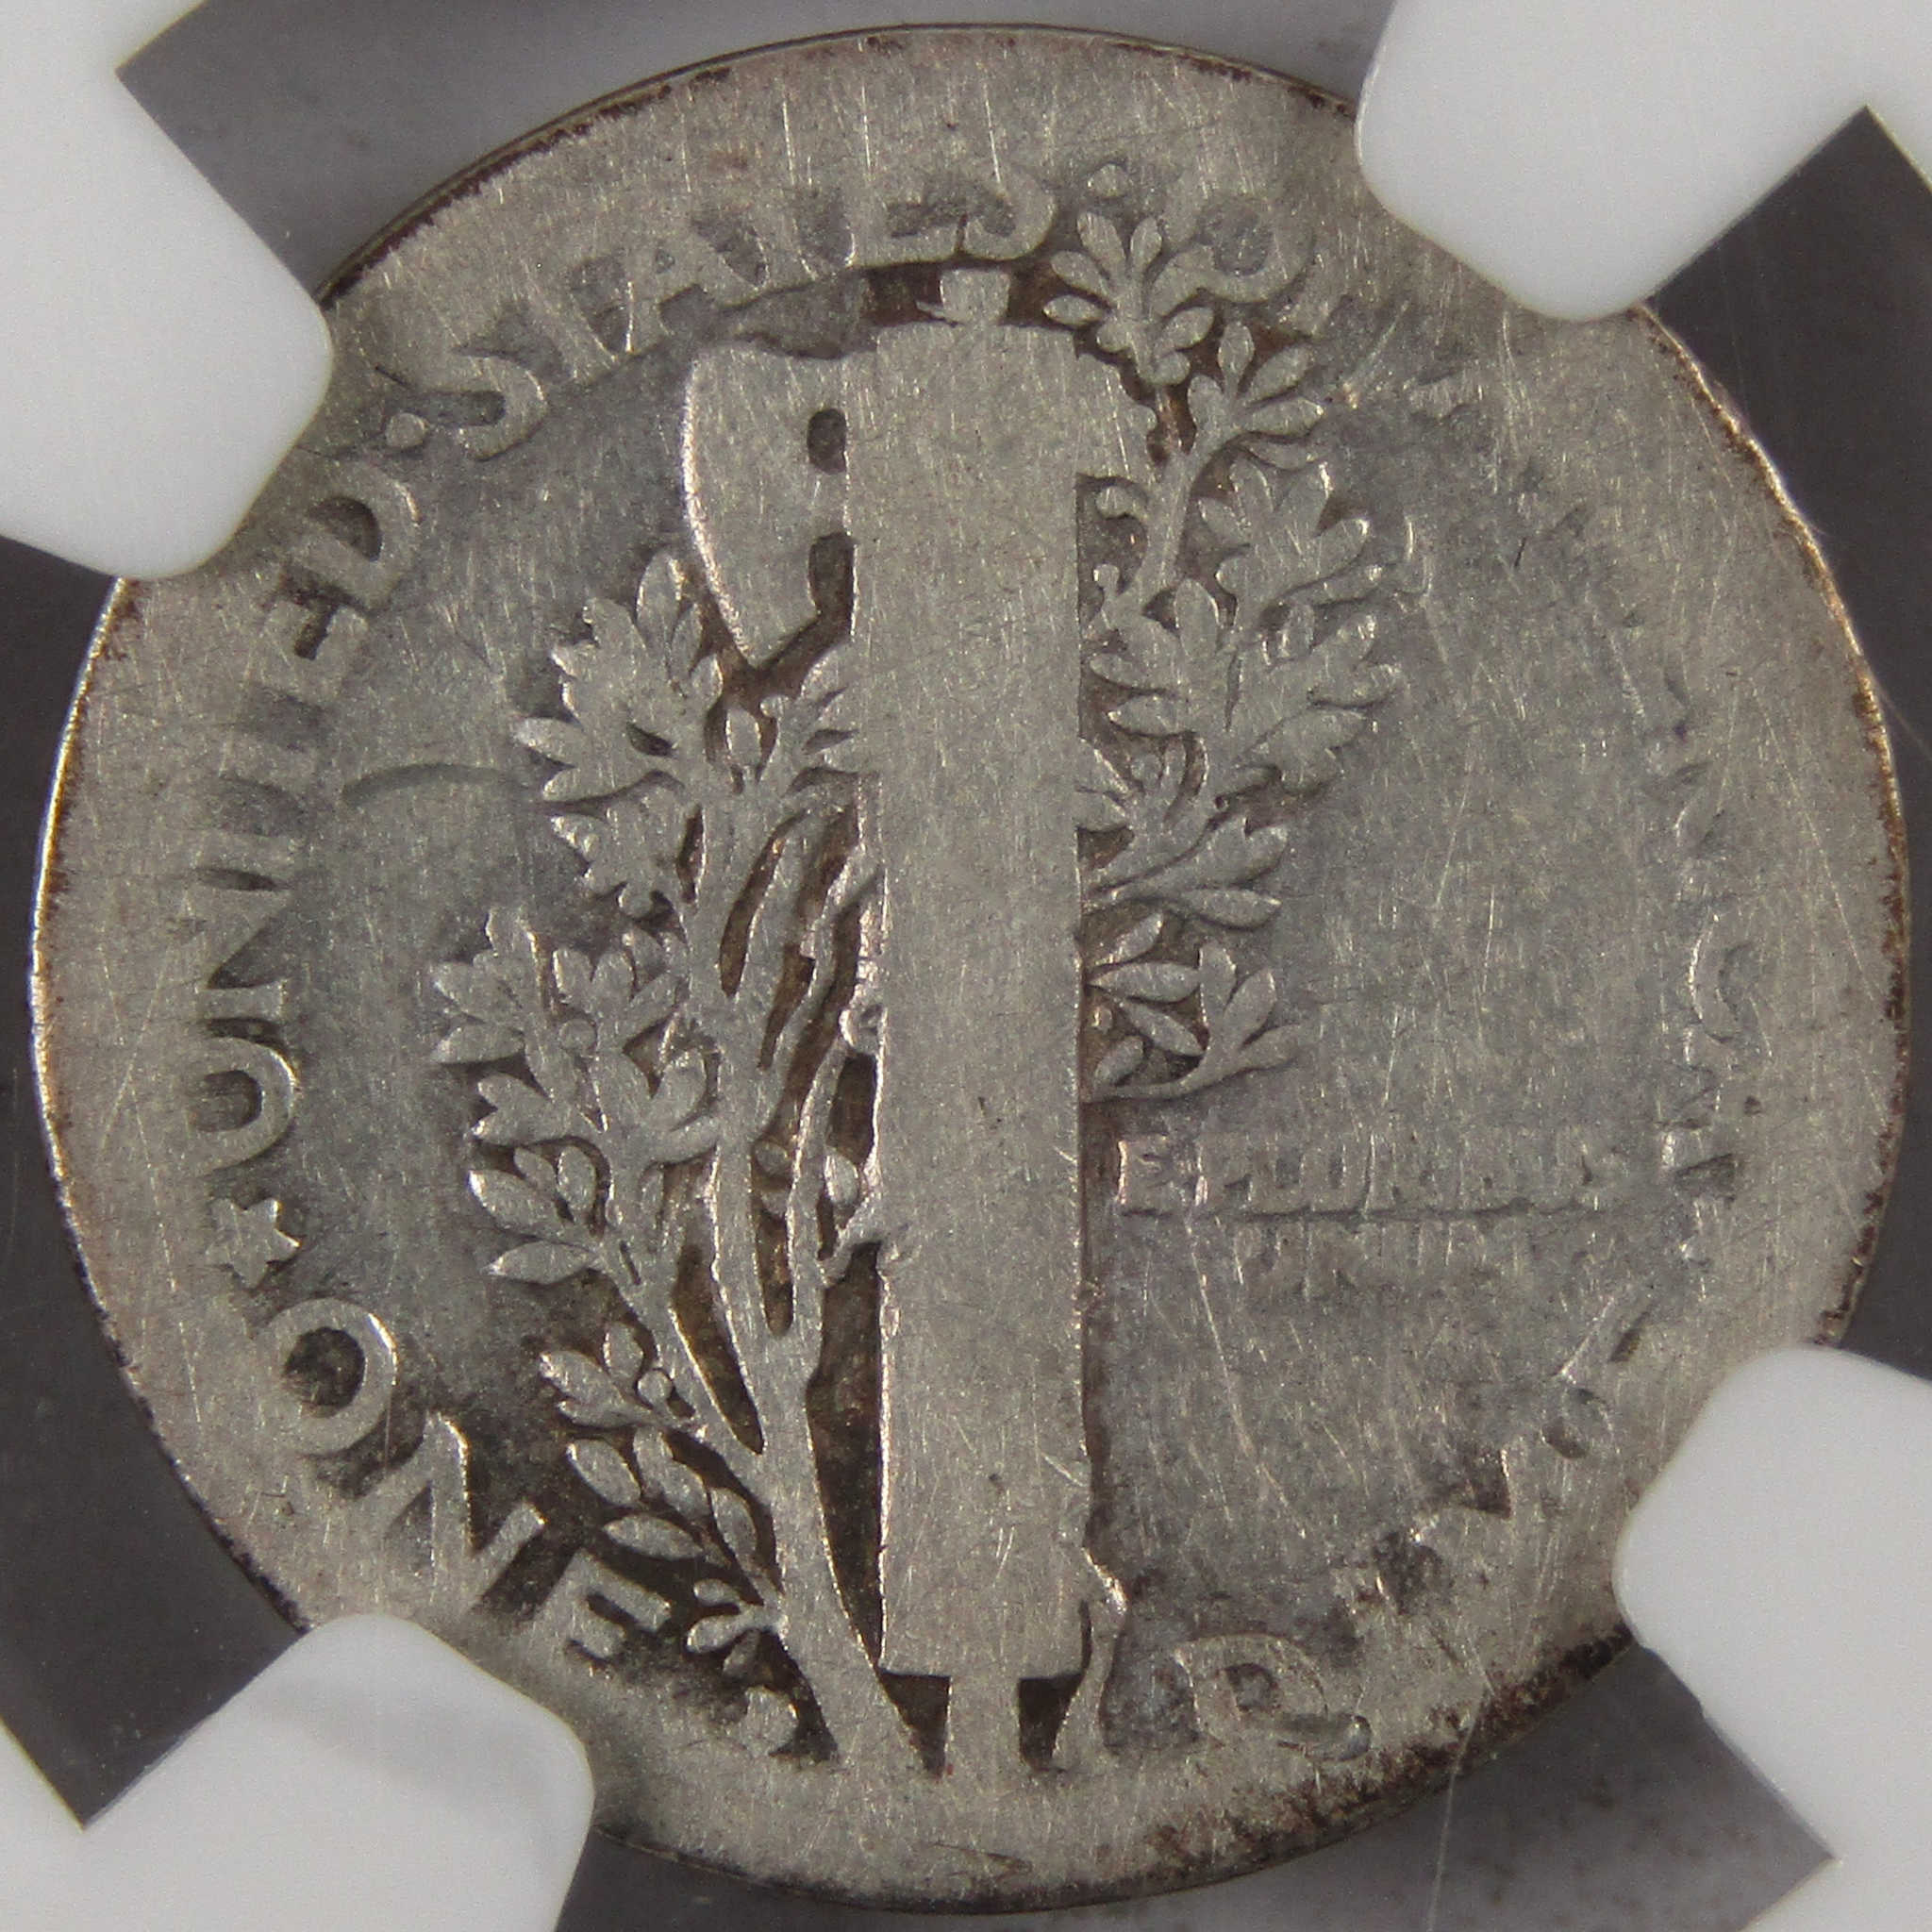 1916 D Mercury Dime AG 3 NGC 90% Silver 10c Coin SKU:I10159